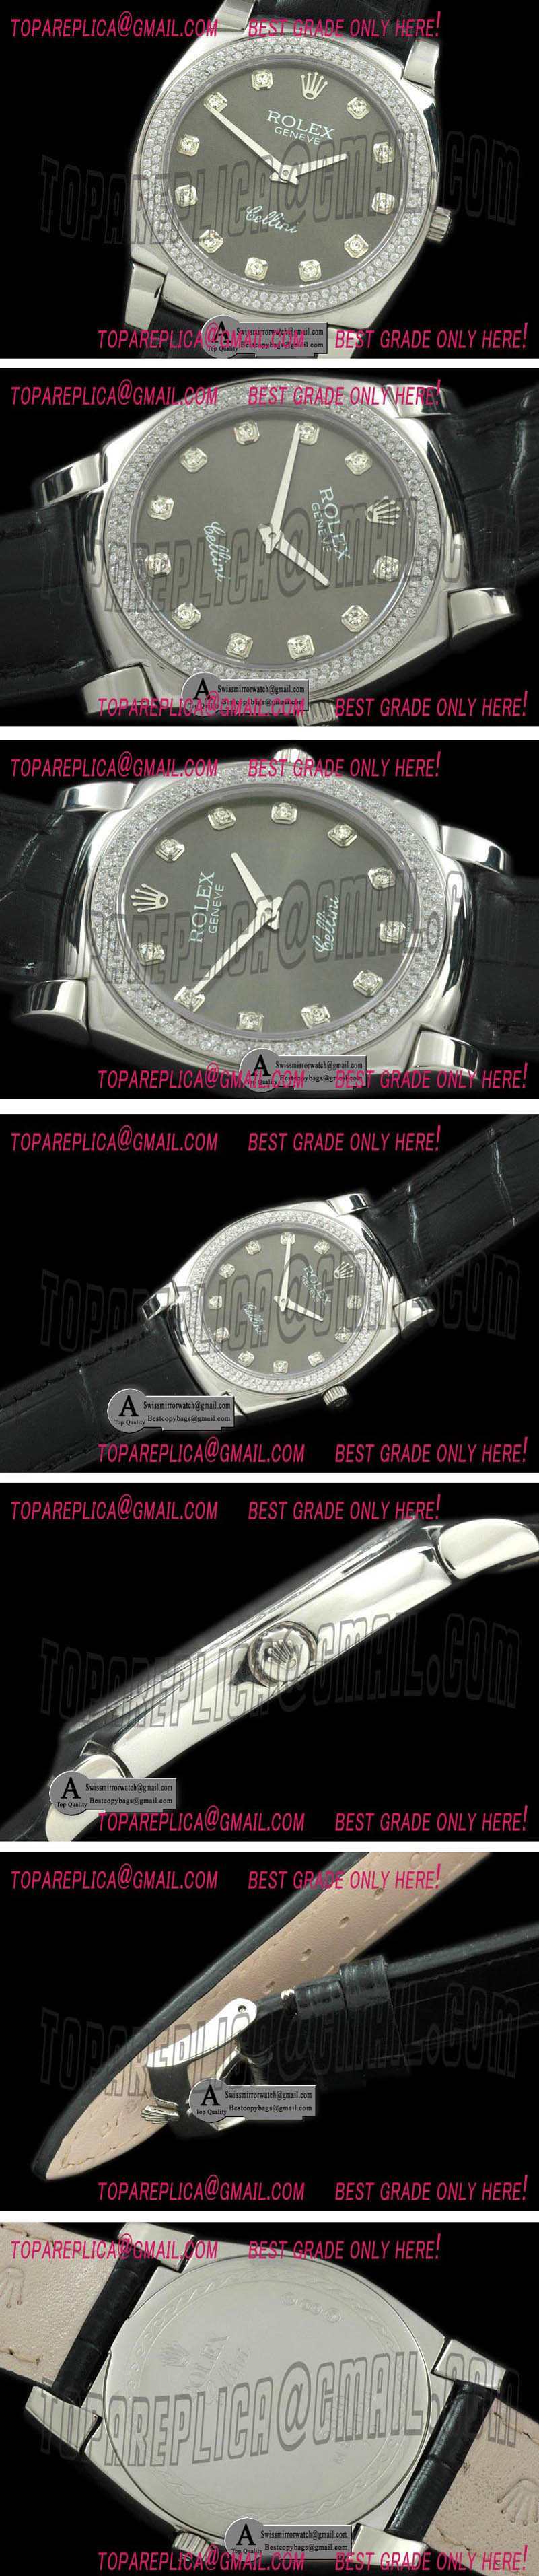 Rolex Cellini SS/Leather Grey Diamond Swiss Quartz Replica Watches